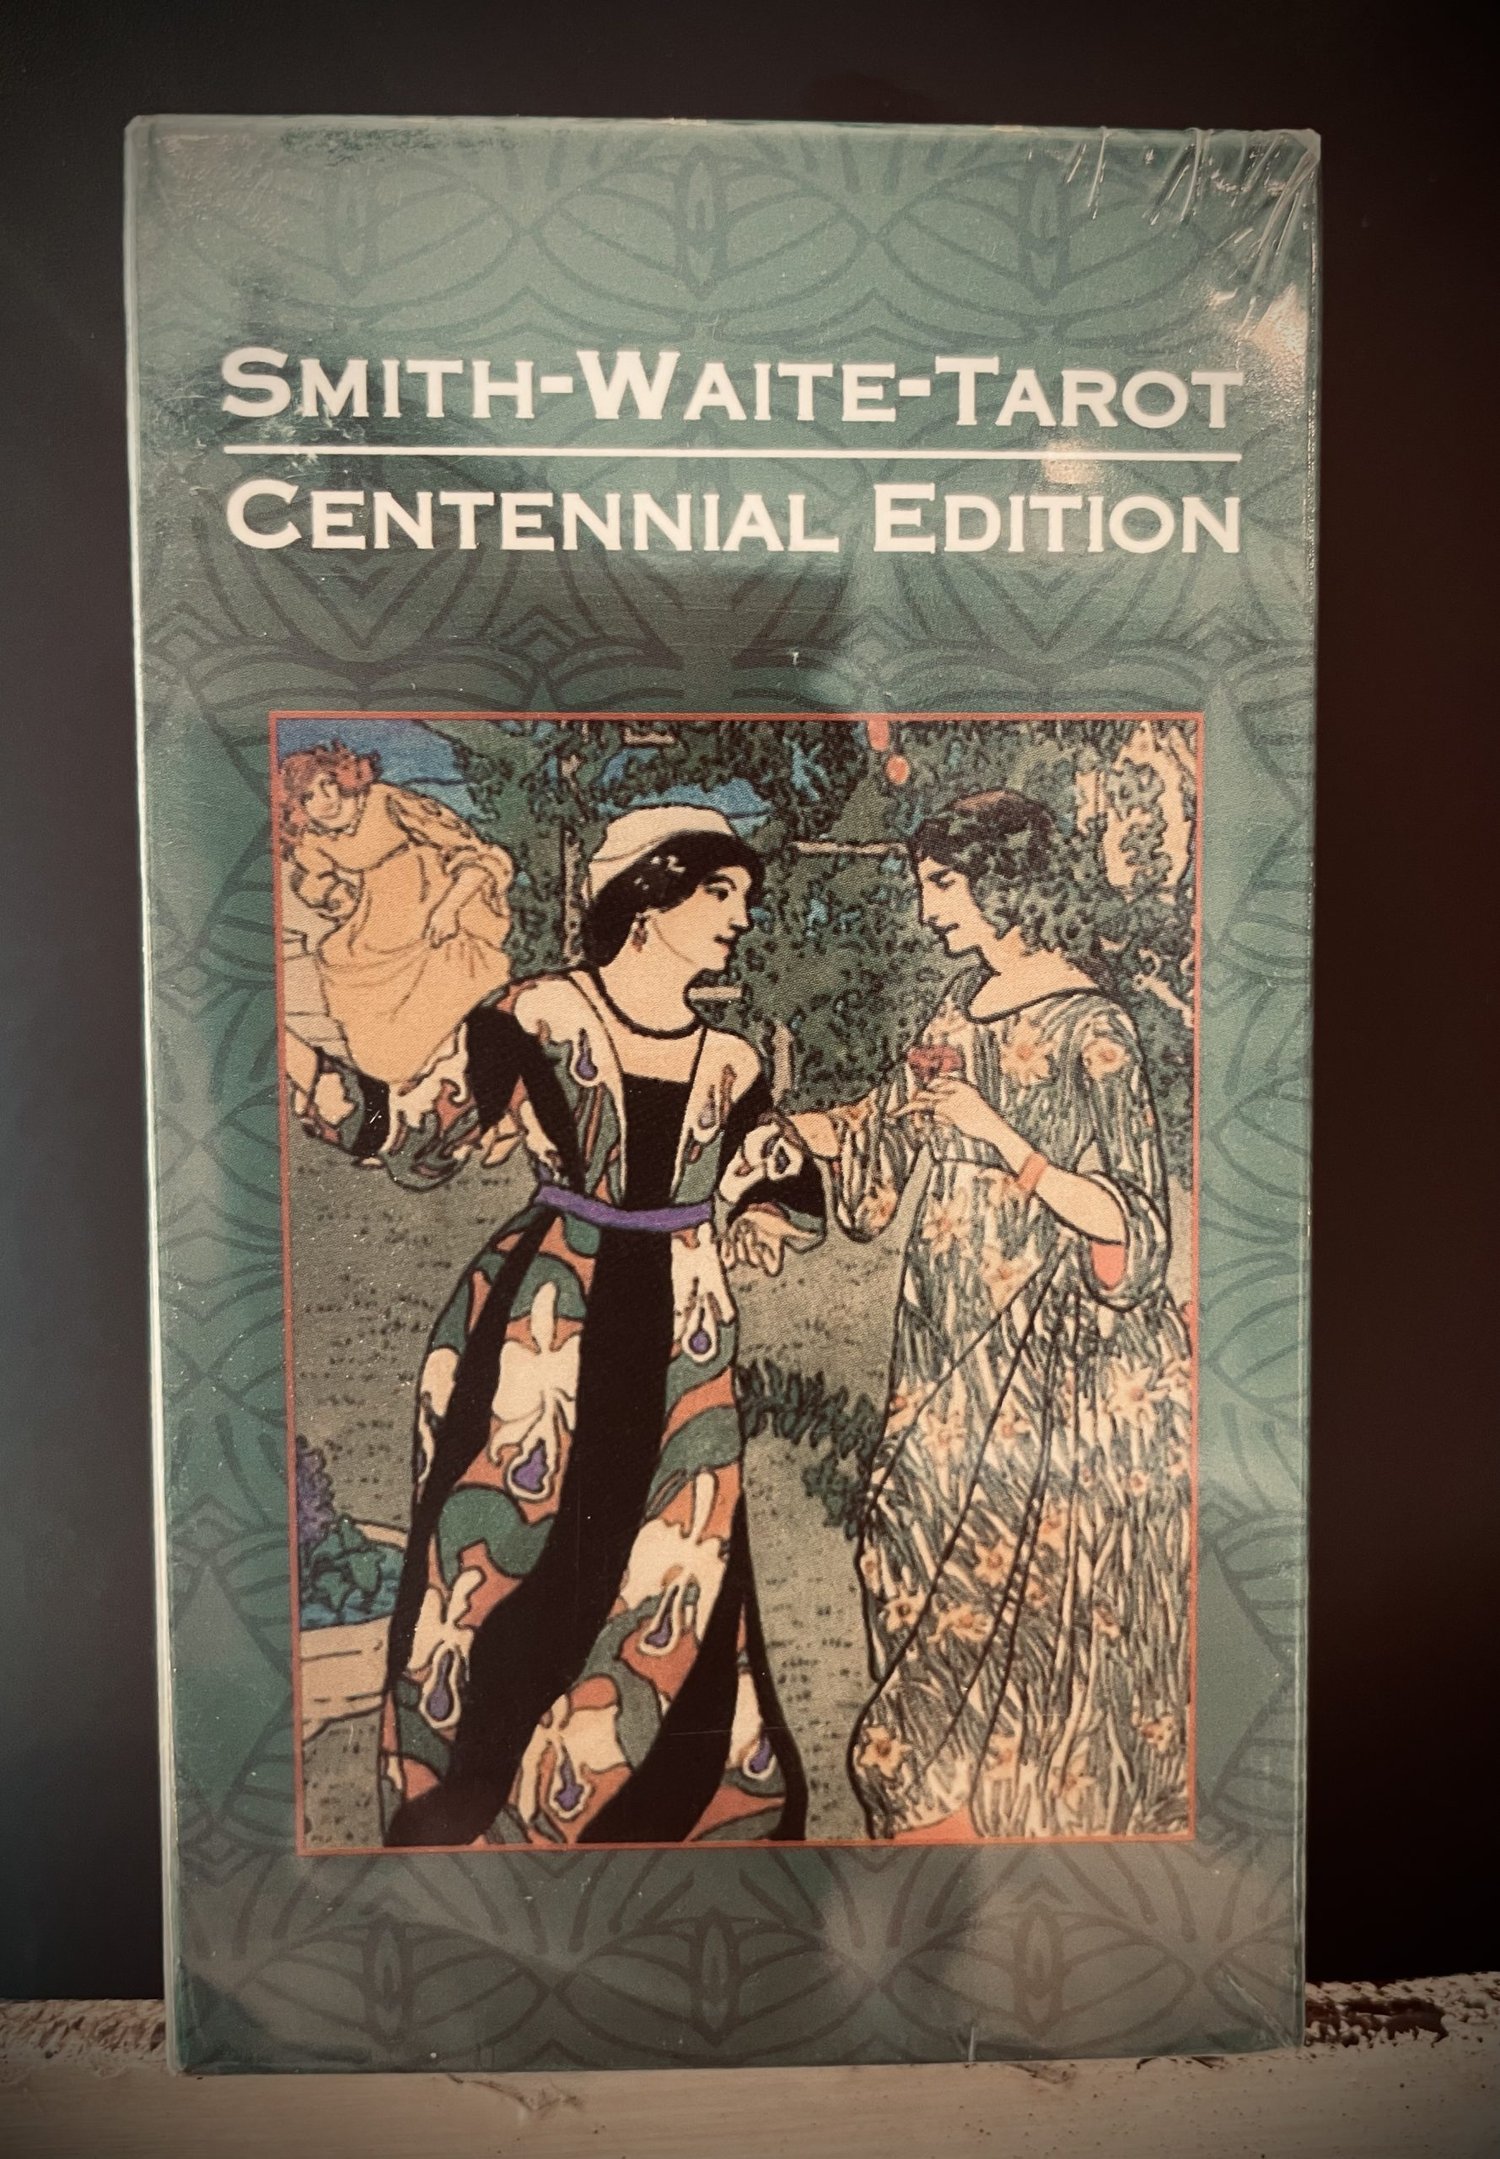 Smith-Waite-Tarot Centennial Edition — Flower Power ❀ Herbs